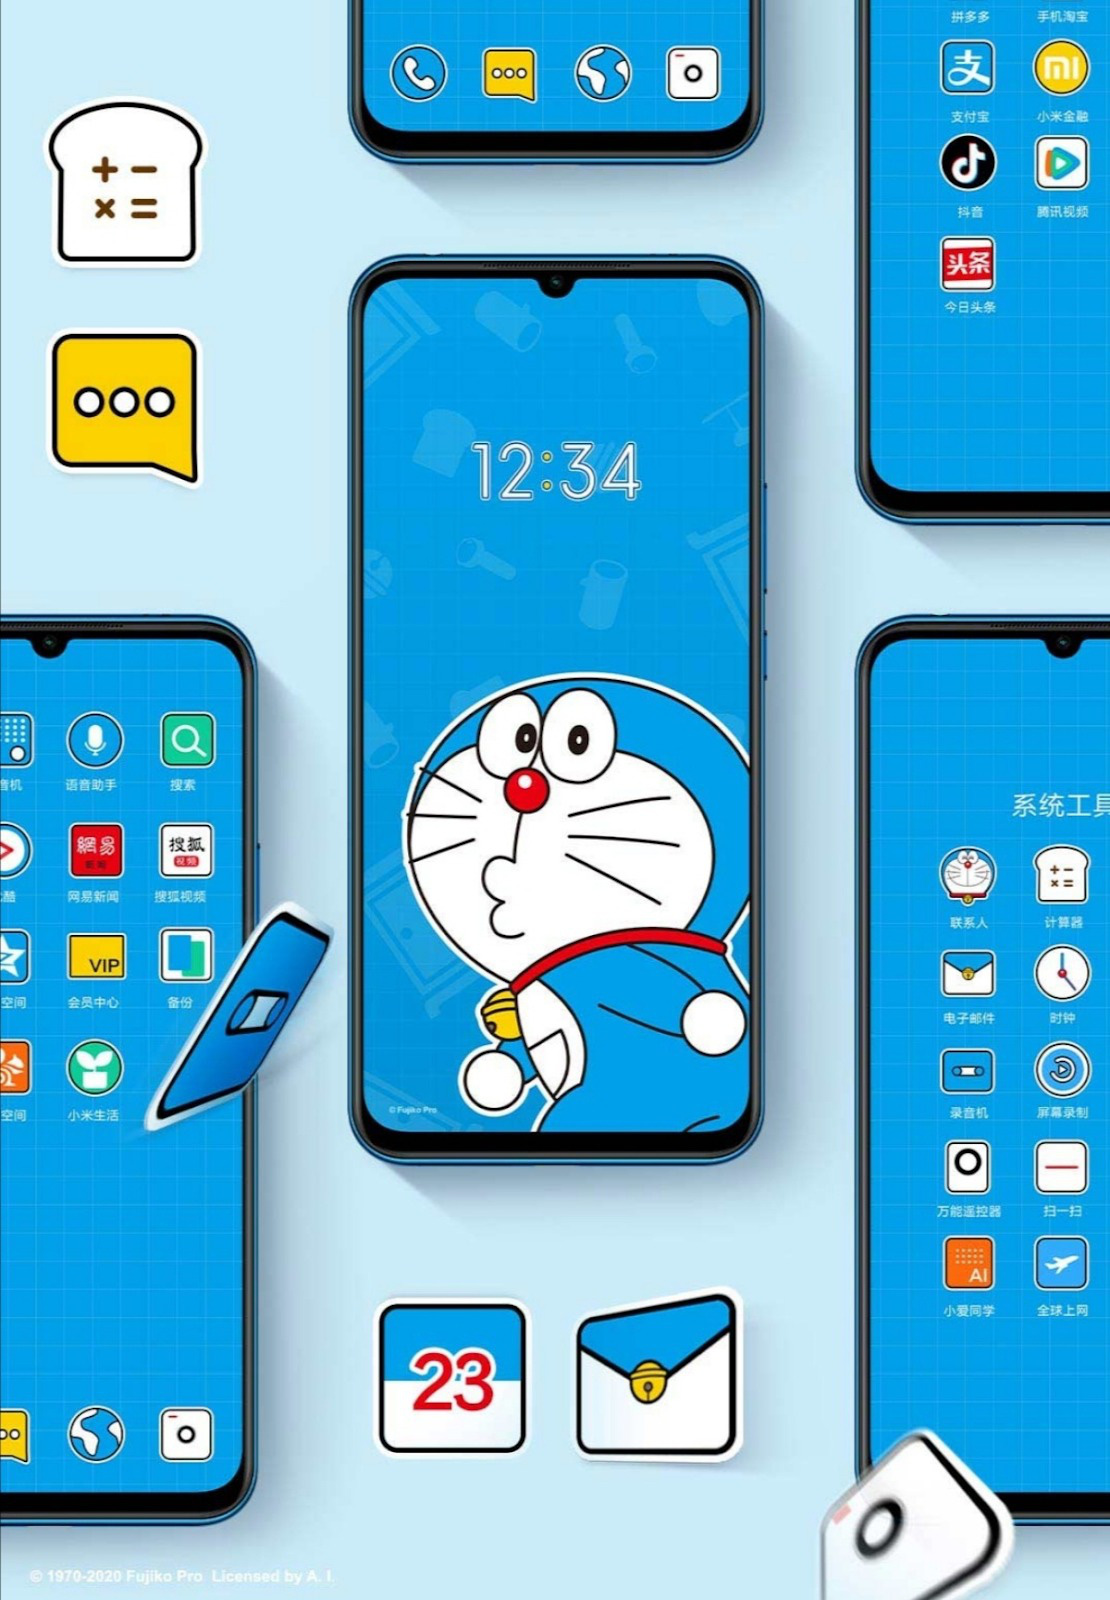 Xiaomi: Sản phẩm của Xiaomi luôn nhận được nhiều sự quan tâm từ các bạn trẻ hiện nay. Hãy cùng kiểm tra các hình ảnh liên quan đến thiết bị của Xiaomi để biết thêm thông tin về sản phẩm này.